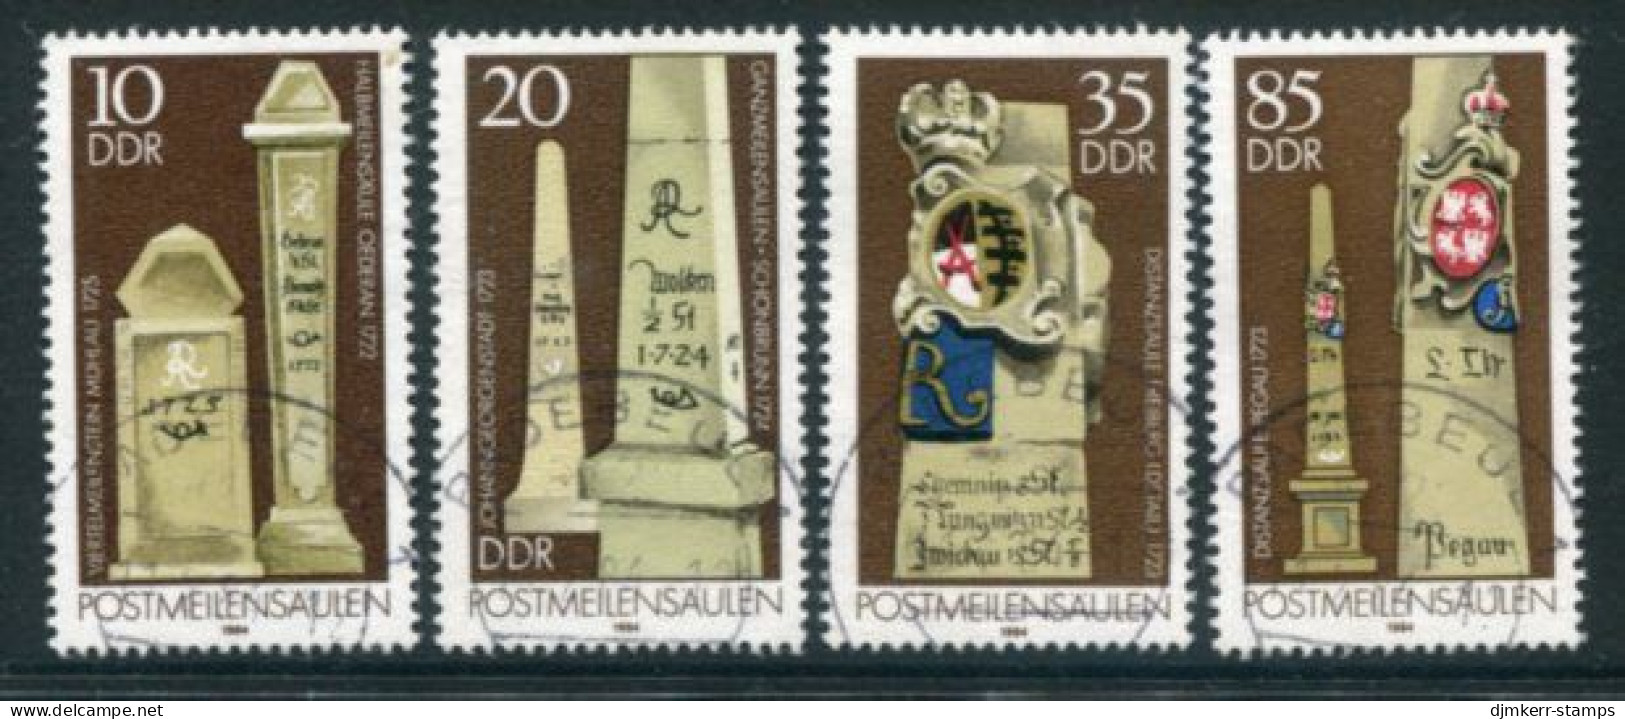 DDR 1984 Postal Milestones Used.  Michel 2853-56 - Usati